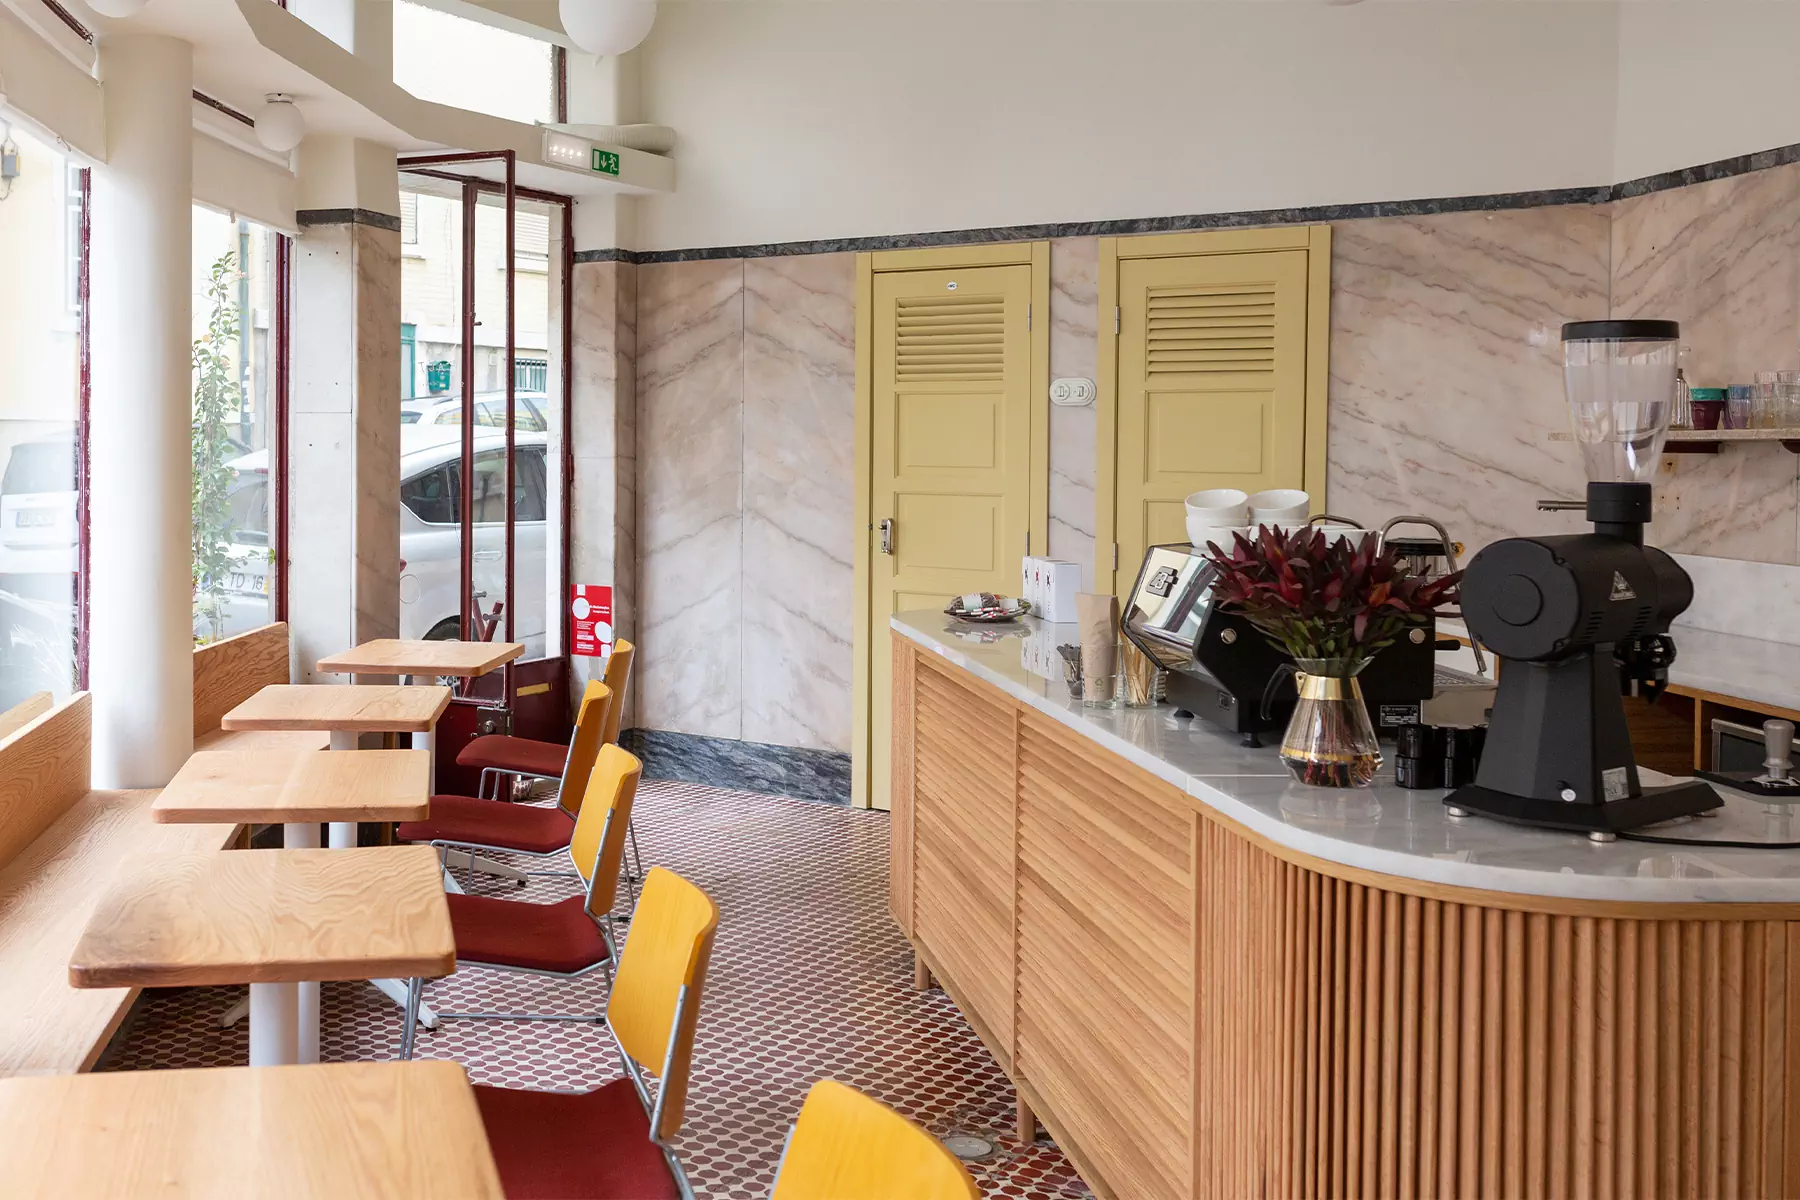 Модернистский интерьер португальского кафе с богатыми исходными данными — проект Ольги Чут